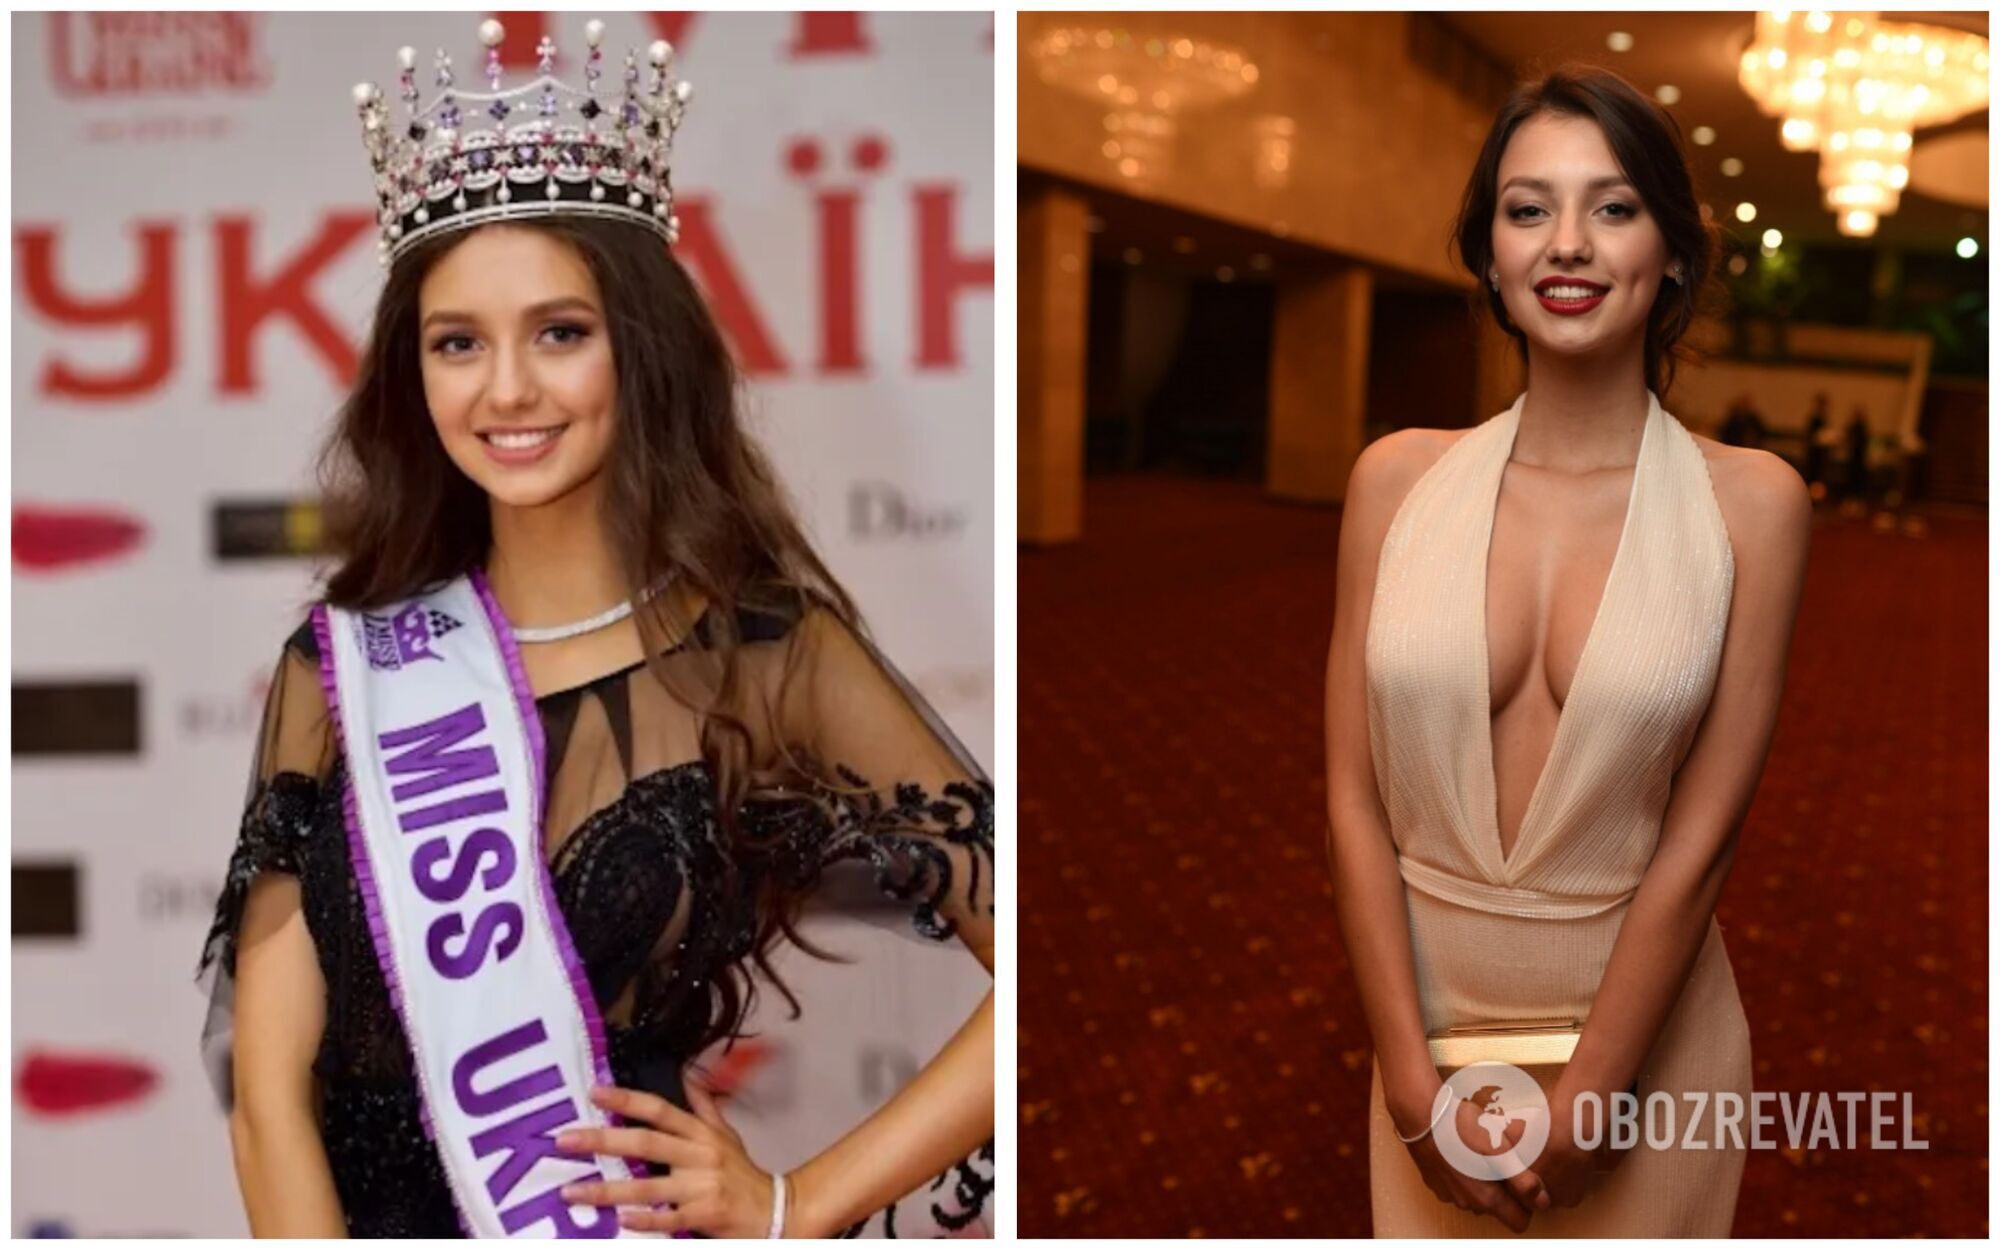 "Міс Україна" 2017 року: Поліна Ткач тоді і зараз